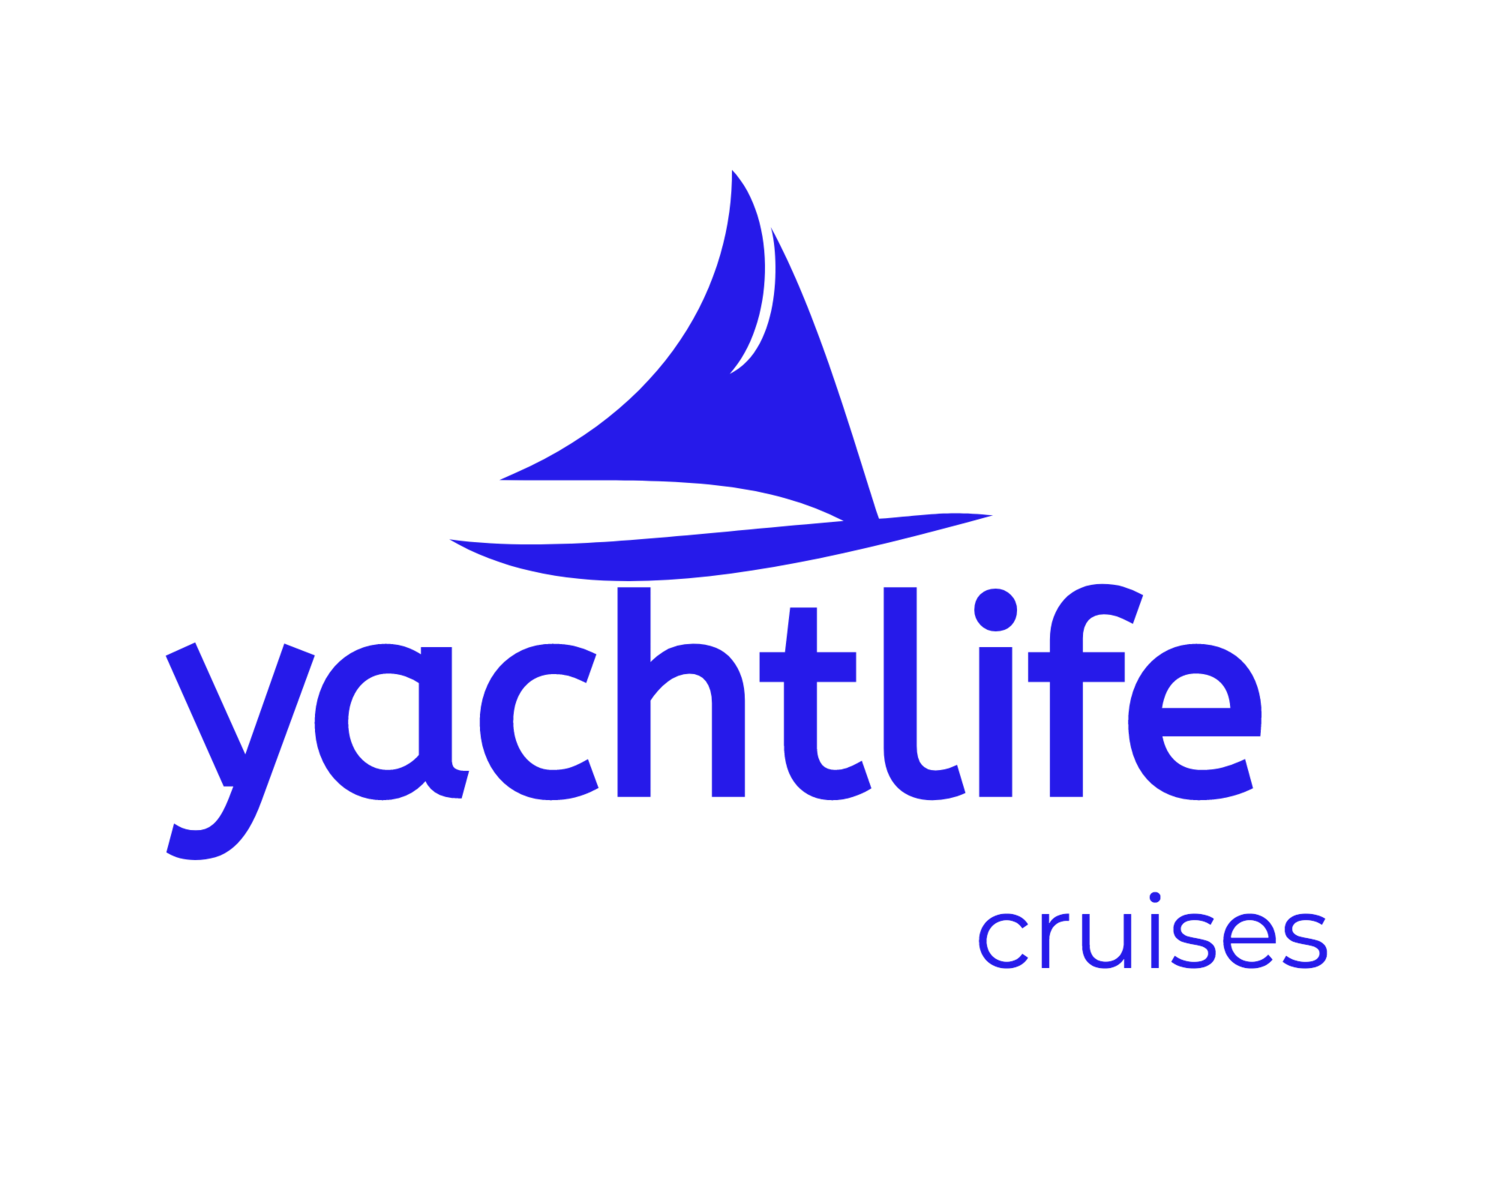 #Yachtlife